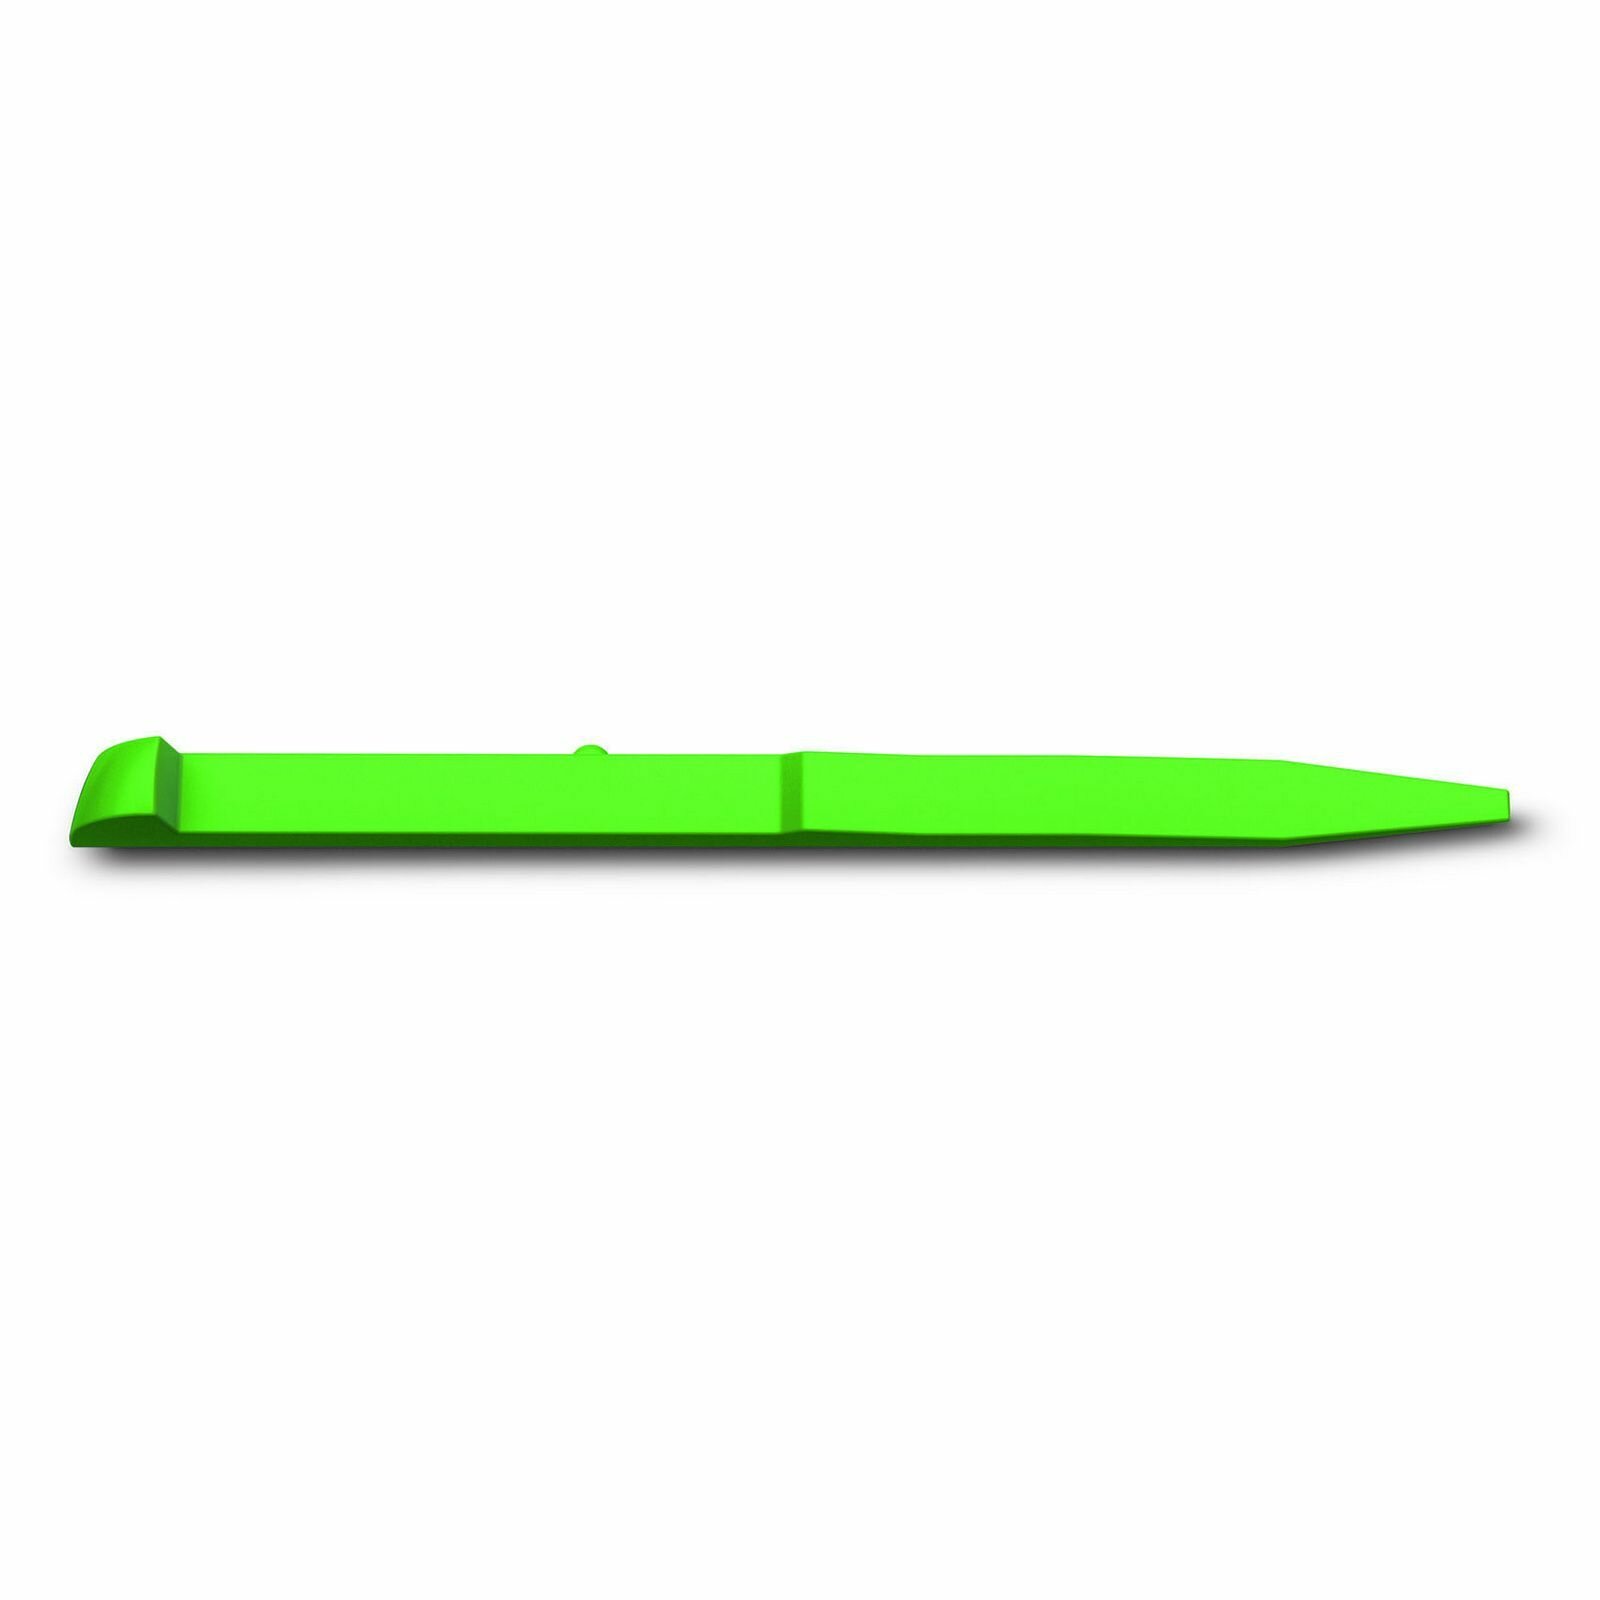 Зубочистка Victorinox, большая A.3641.4 зеленая, для ножей 84 мм, 85 мм, 91 мм, 111 мм и 130 мм